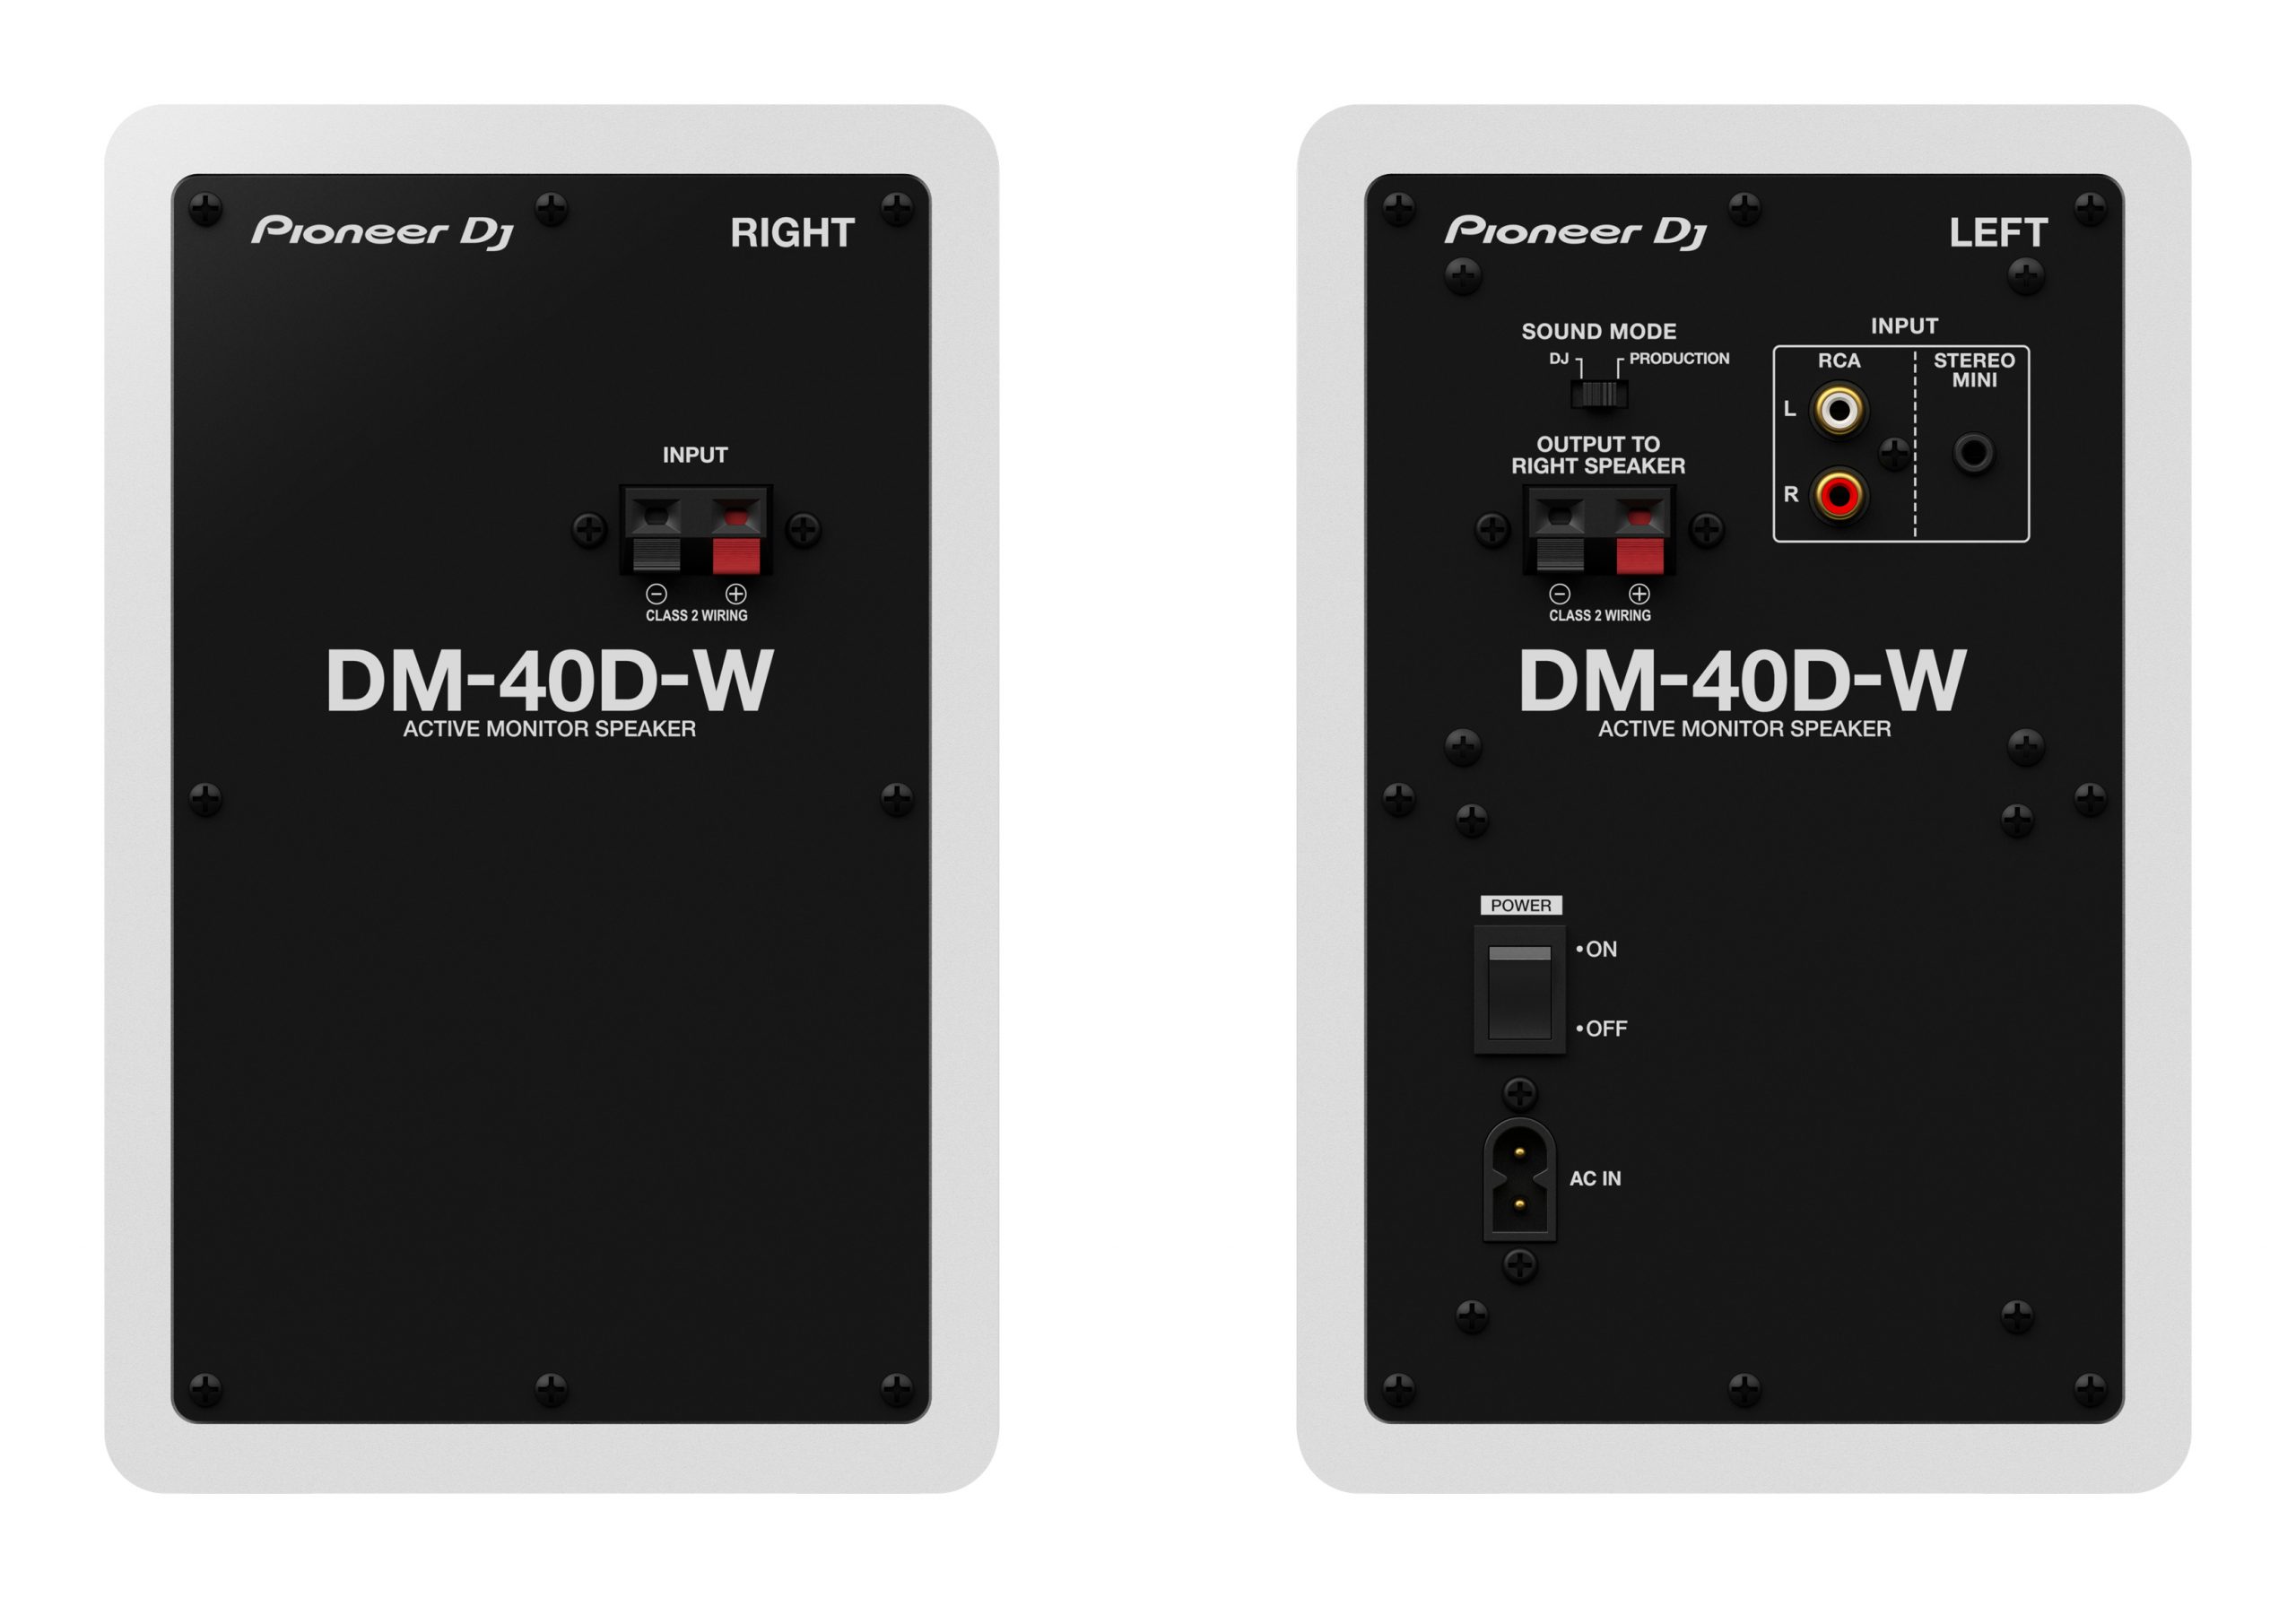 Pioneer Dj Dm-40d-w - Monitor de estudio activo - Variation 2